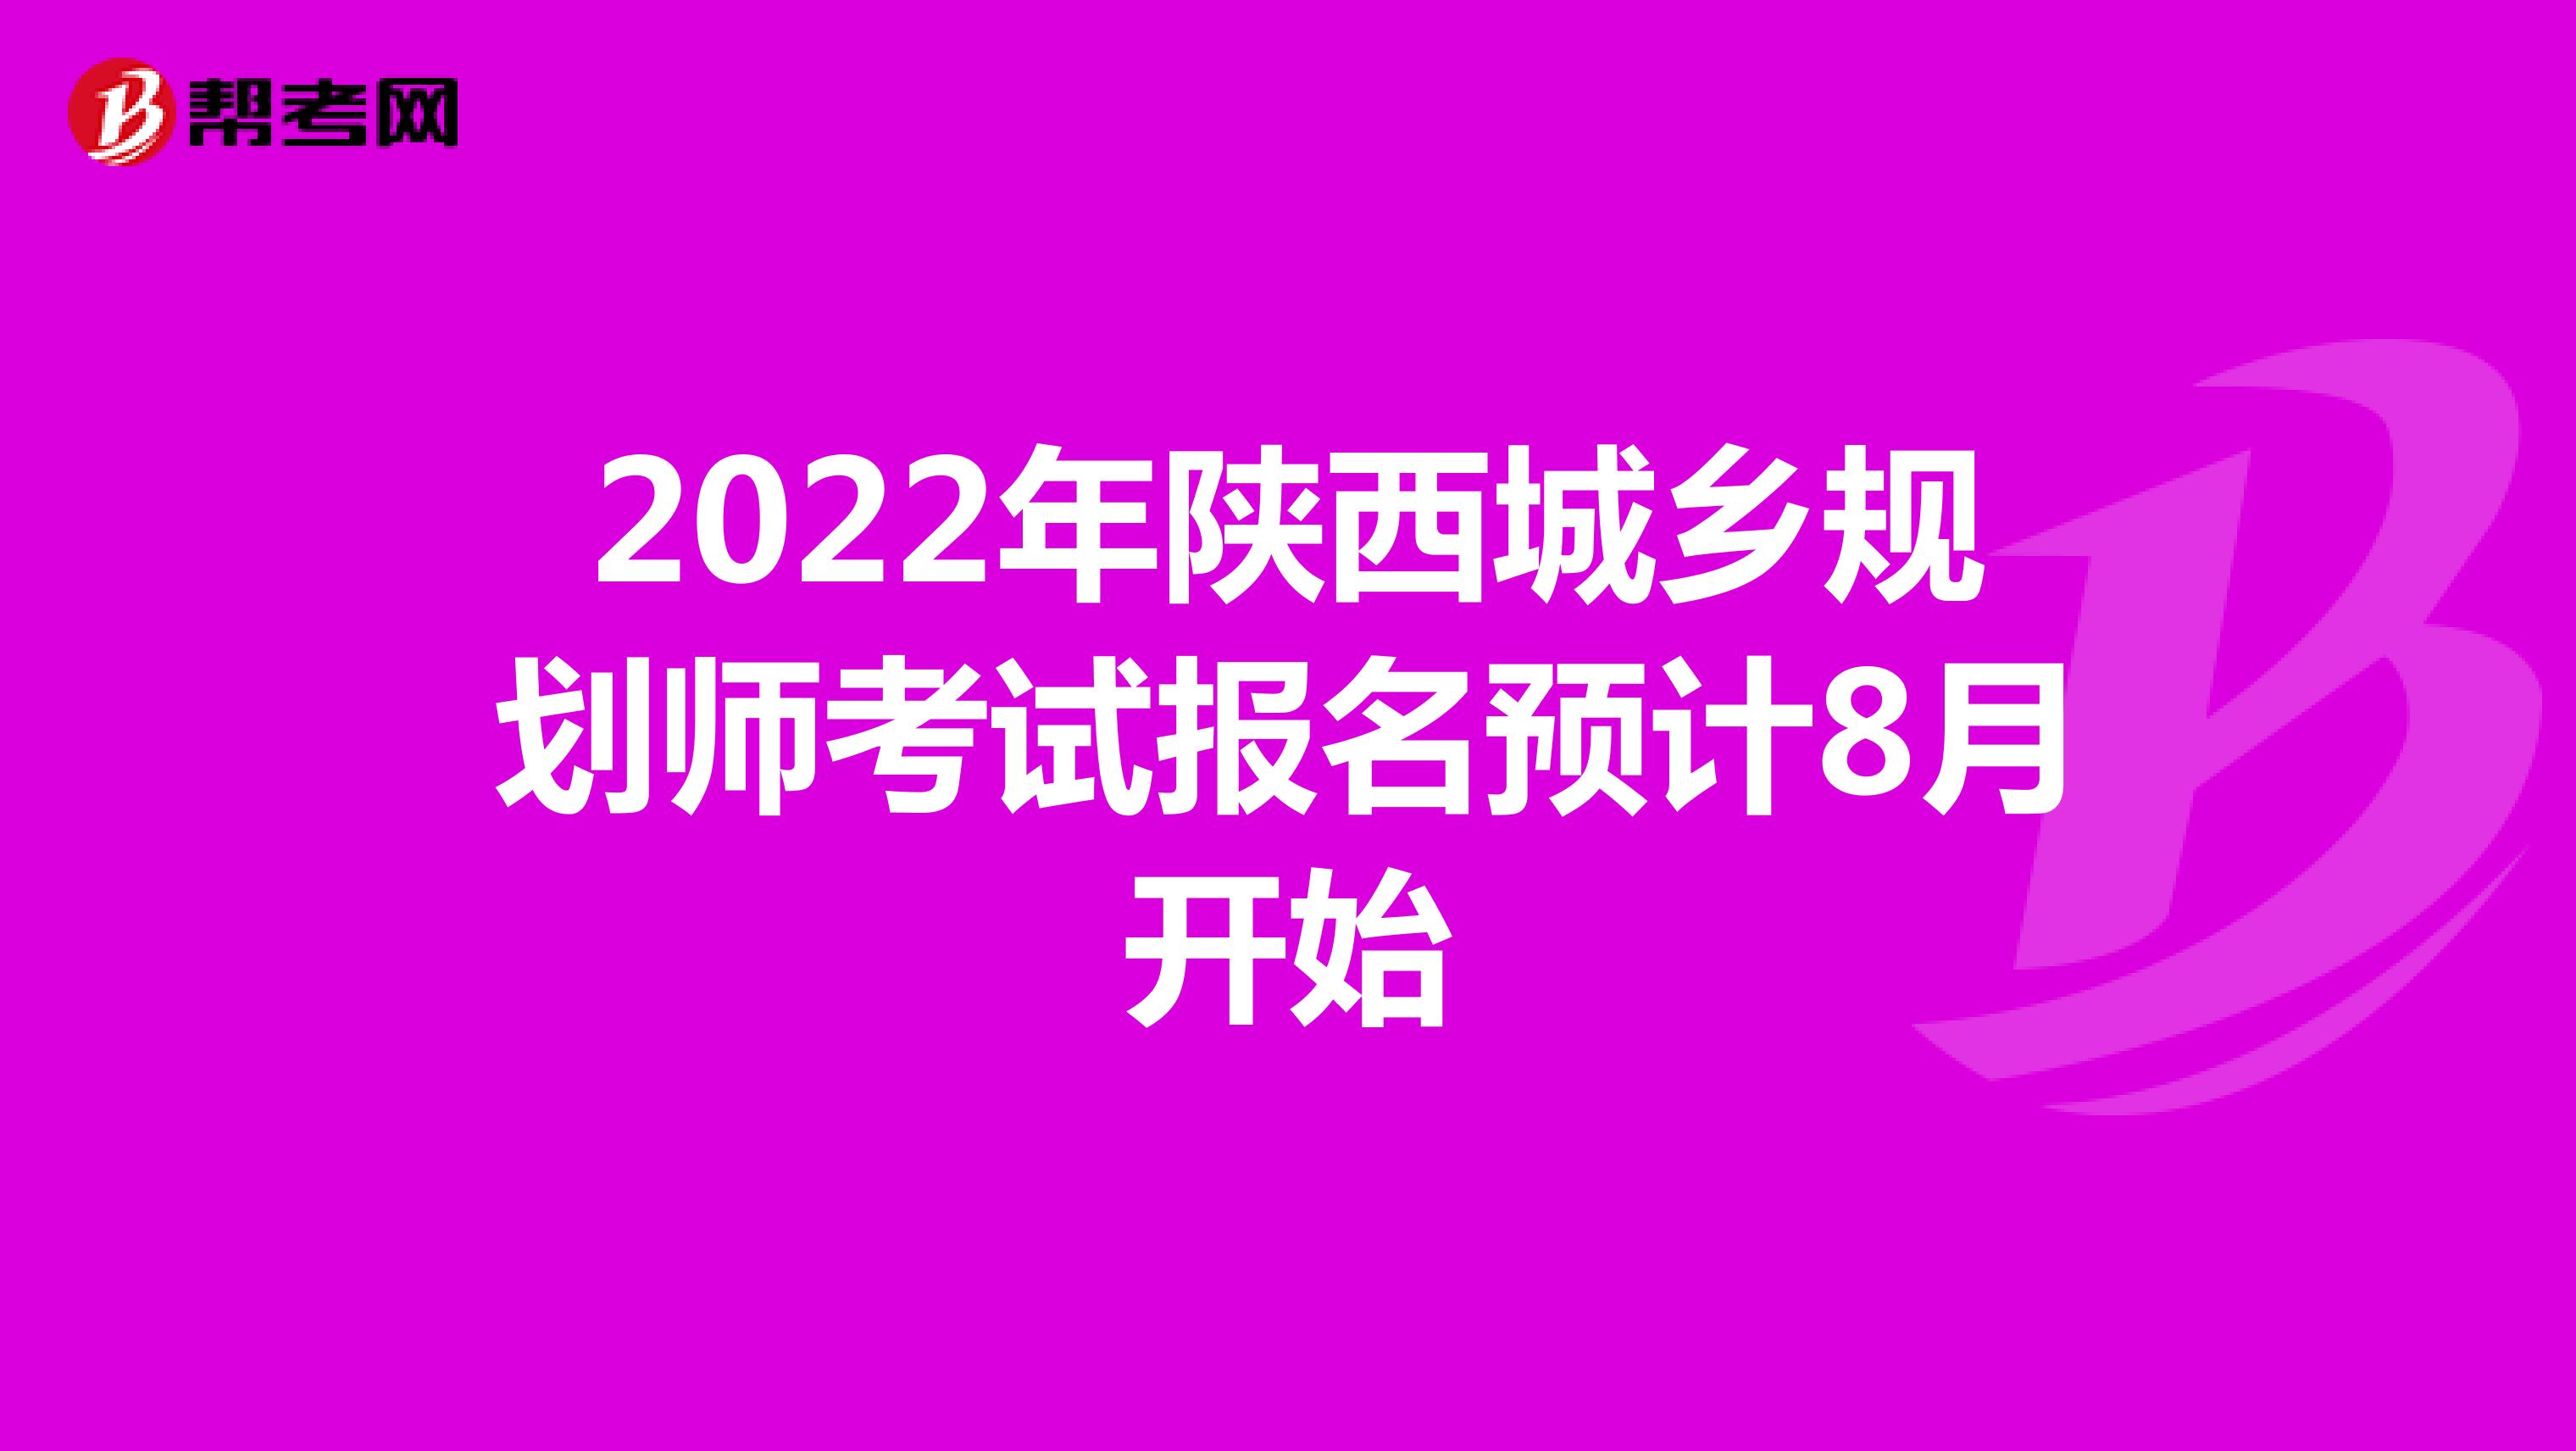 2022年陕西城乡规划师考试报名预计8月开始